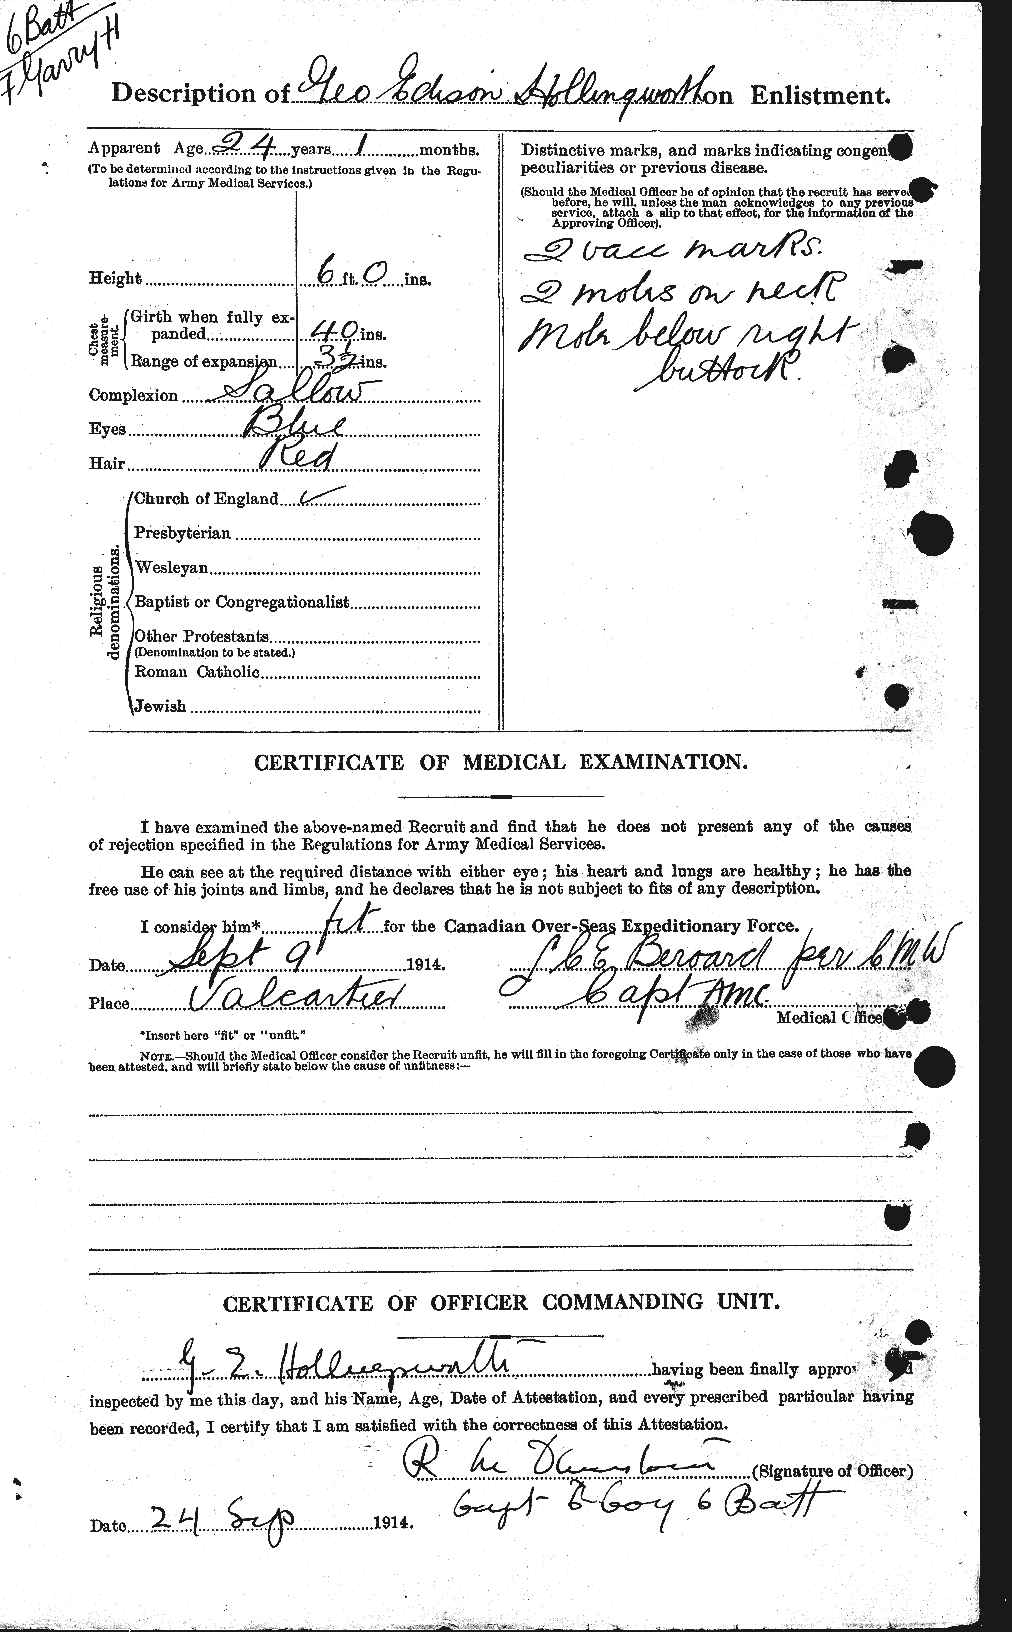 Dossiers du Personnel de la Première Guerre mondiale - CEC 398216b